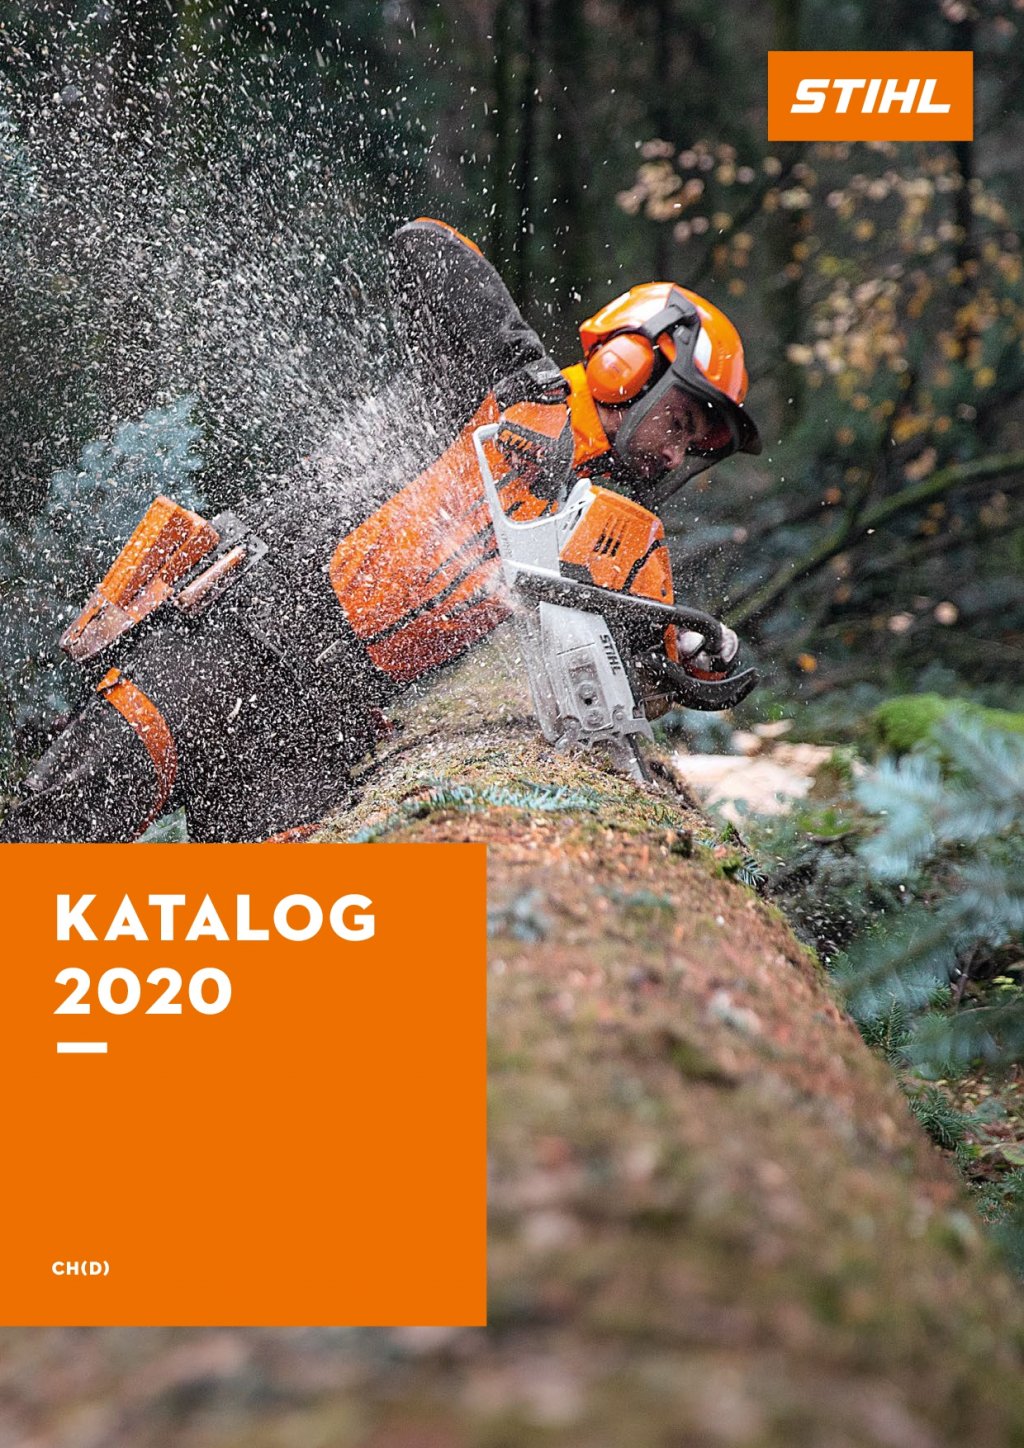 Download Stihl Katalog 2020